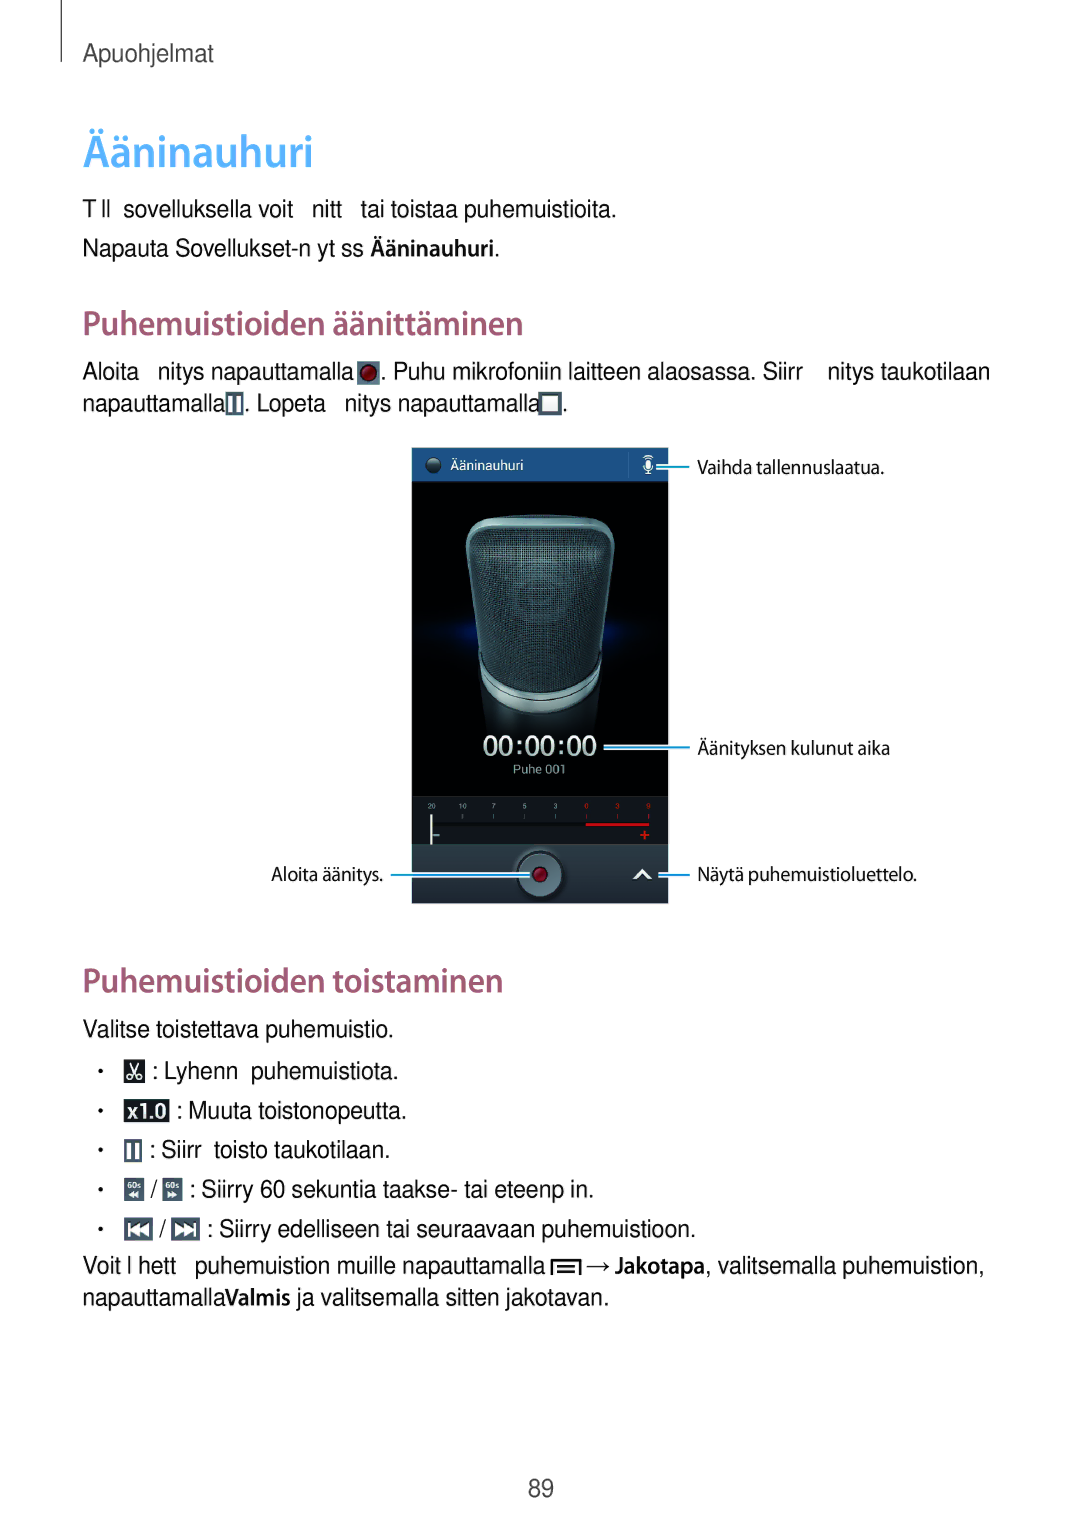 Samsung SM-G3815HKANEE, SM-G3815RWANEE manual Ääninauhuri, Puhemuistioiden äänittäminen, Puhemuistioiden toistaminen 